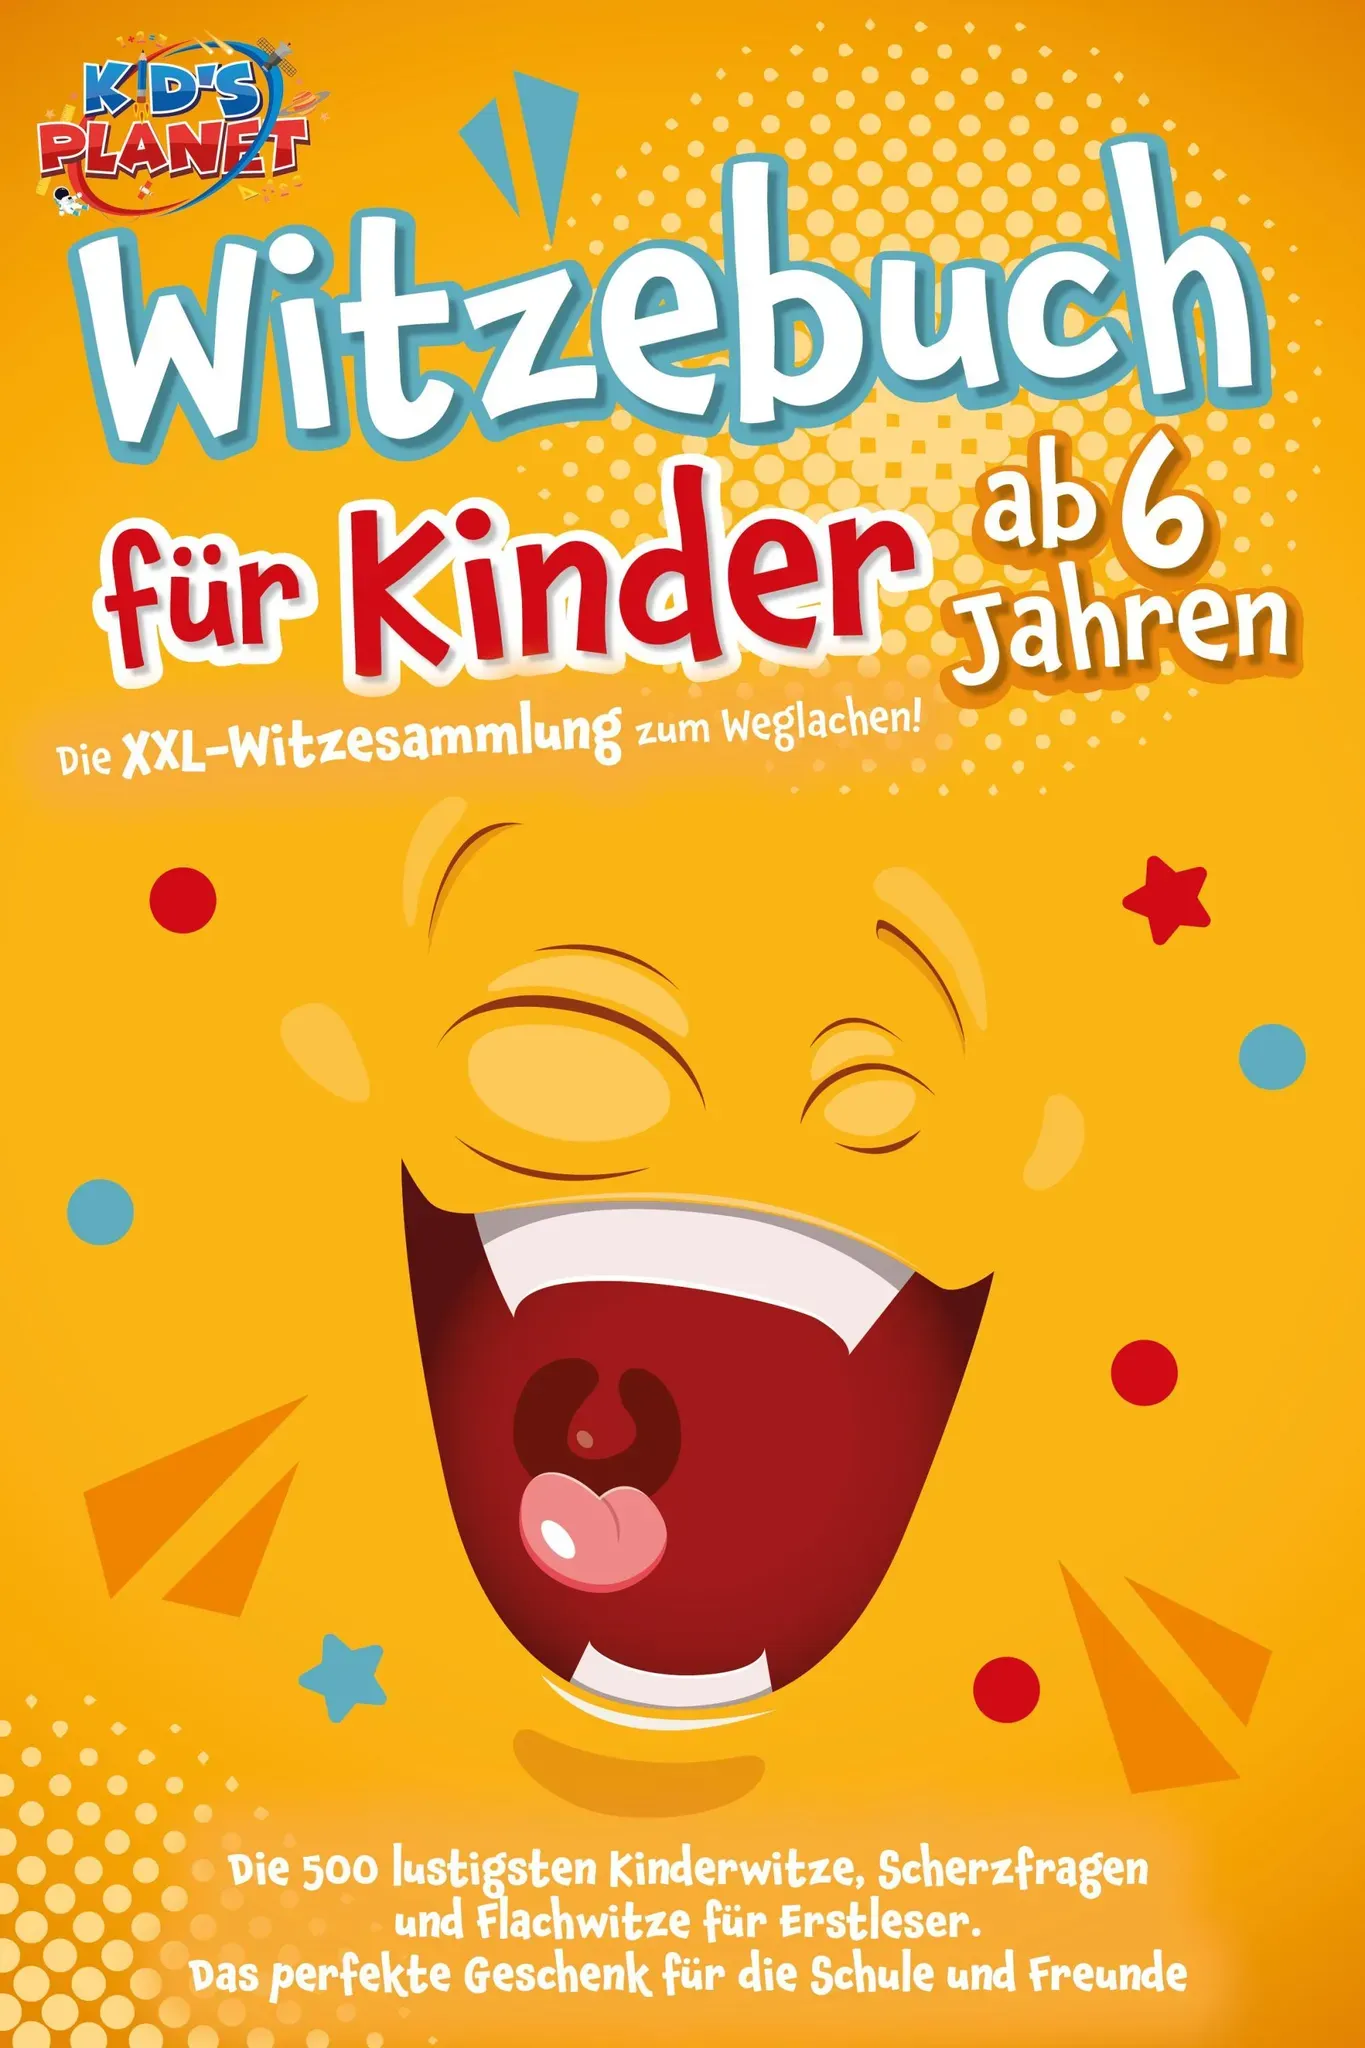 Witzebuch Für Kinder Ab 6 Jahren: Die Xxl-Witzesammlung Zum Weglachen! Die 500 Lustigsten Kinderwitze  Scherzfragen Und Flachwitze Für Erstleser. Das